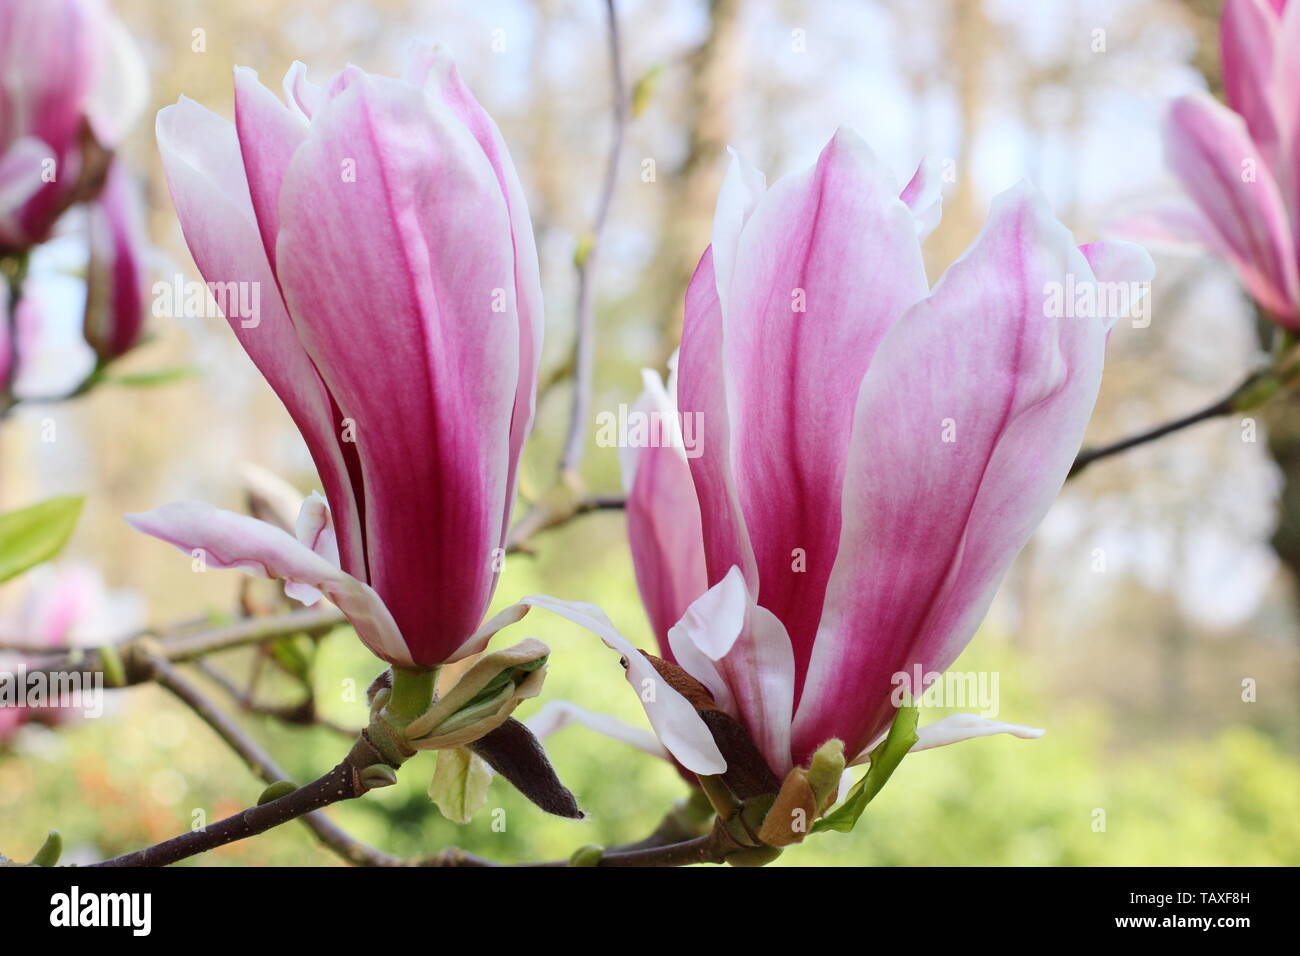 X Magnolia soulangeana ' immagine'. Rosy rosa e bianco fiori di hardy Magnolia 'Immagine'. Chiamato anche Tulip magnolia. Foto Stock